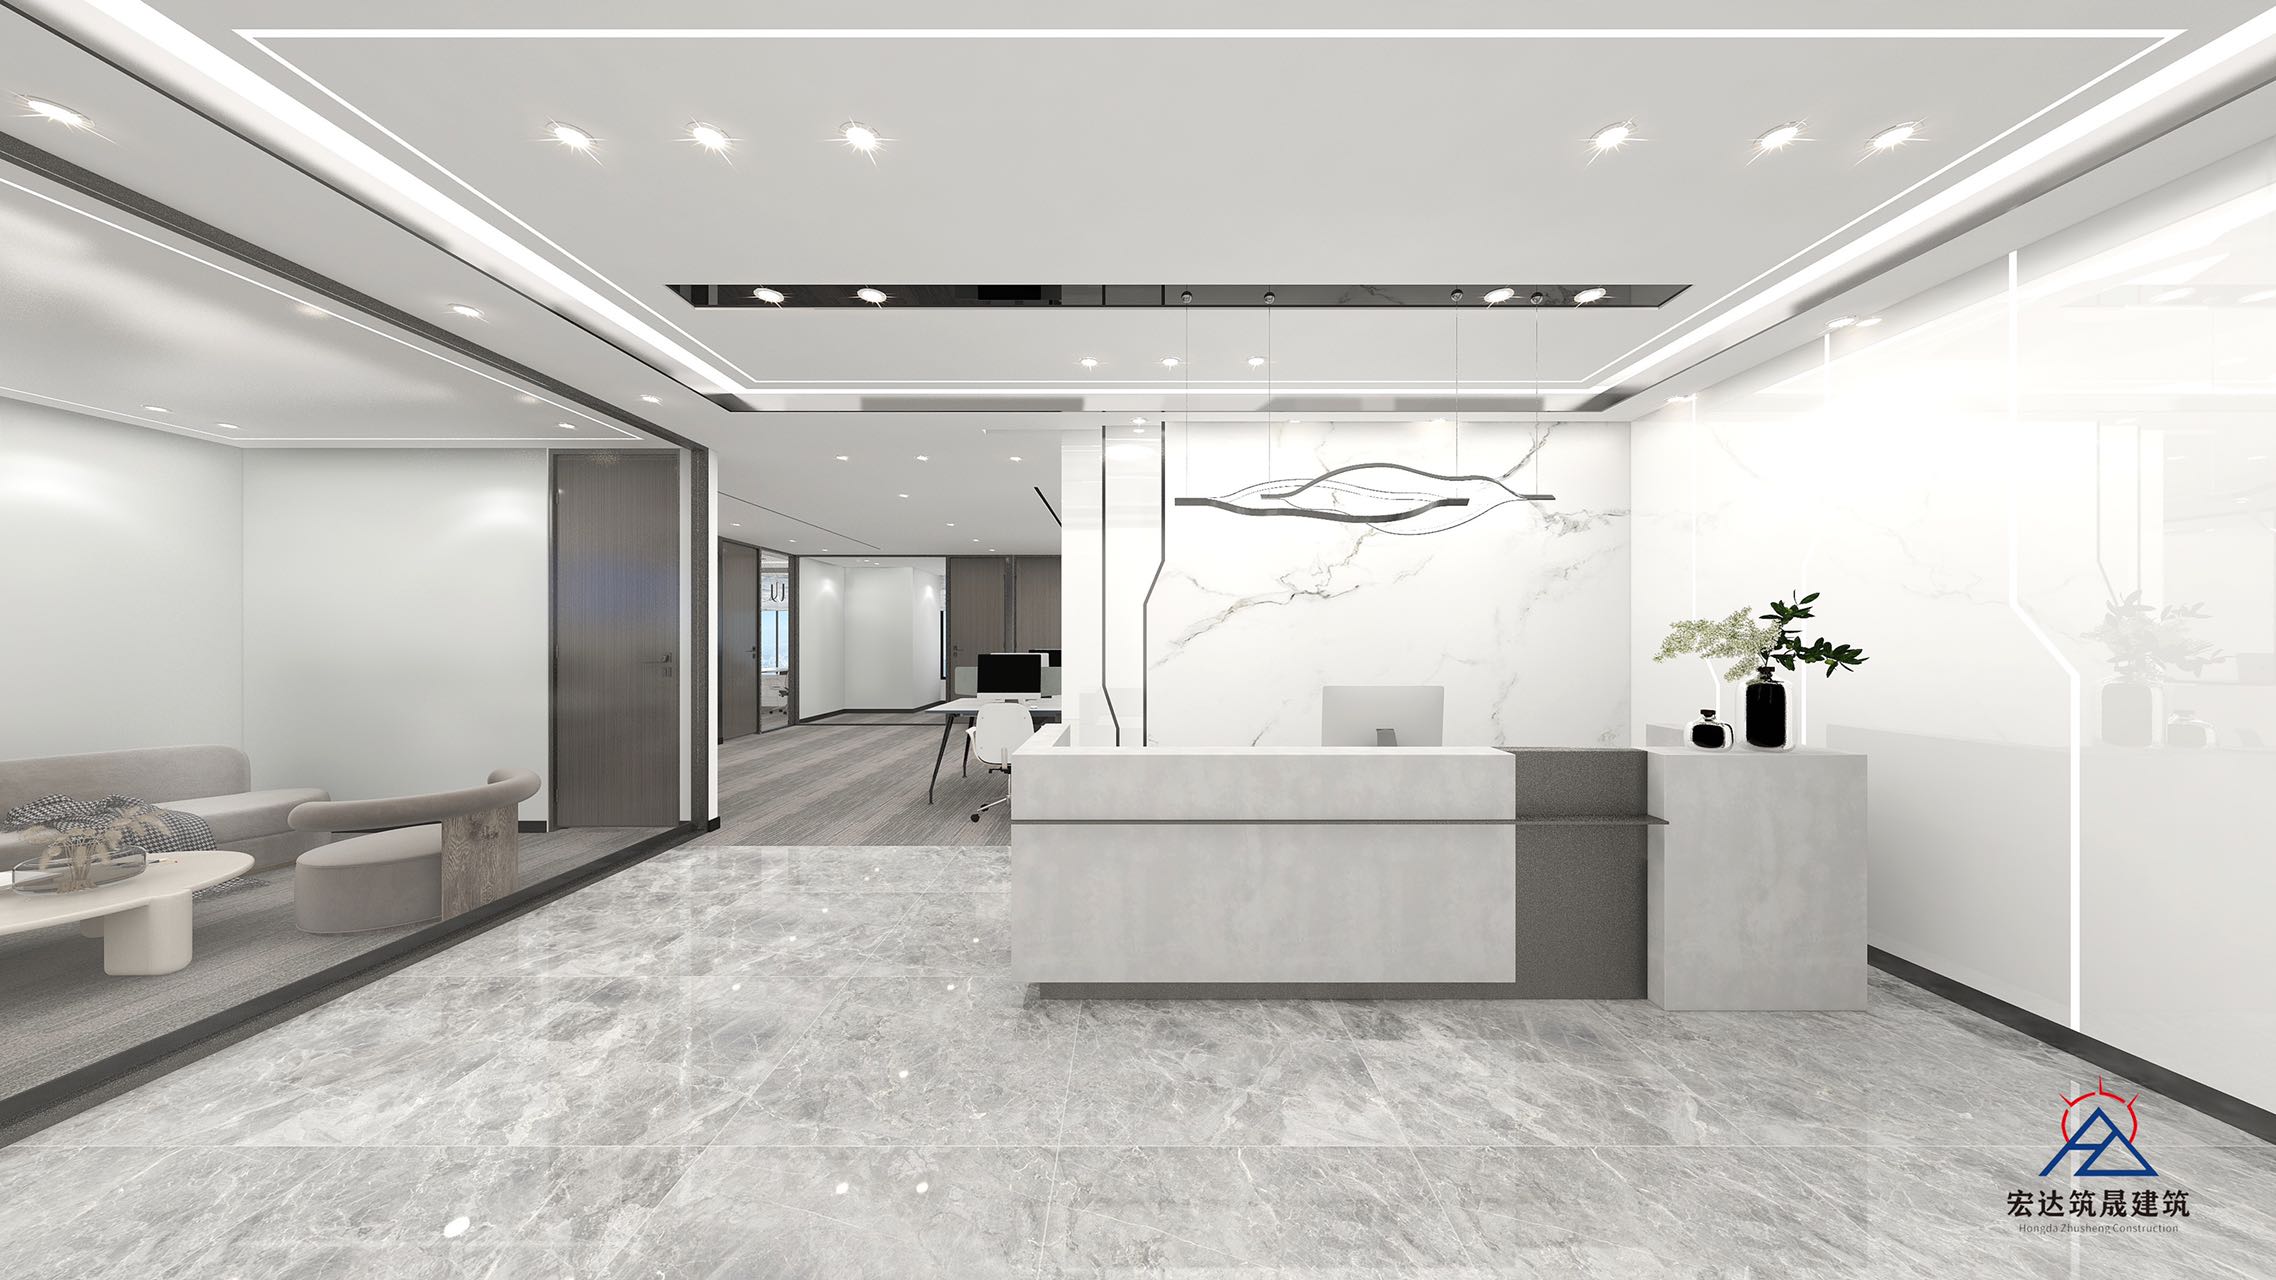 高新区新世纪环球中心精装298平办公室 全新装修现房 带家具 含物业